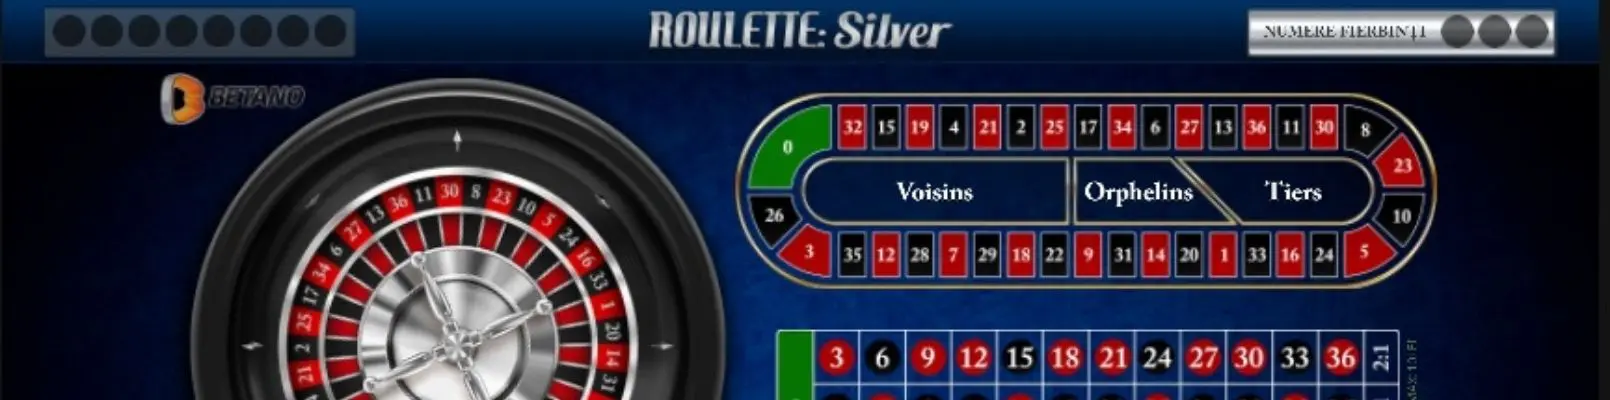 silver ruleta online